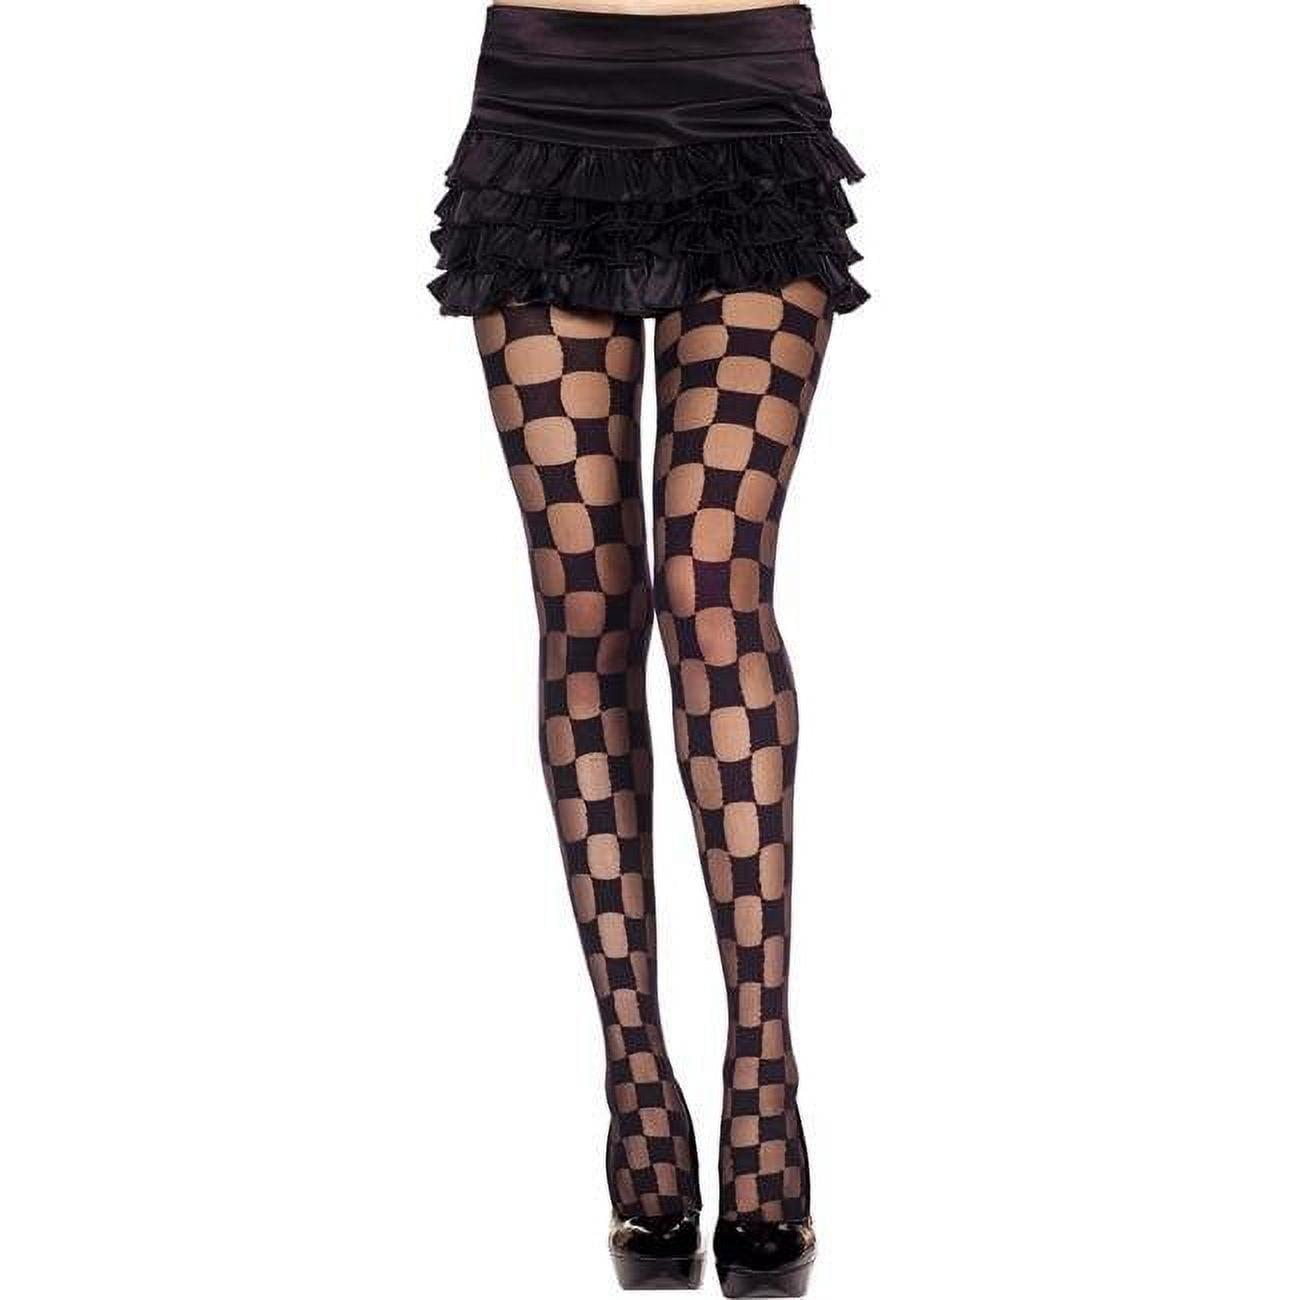 Sheer & Opaque Checkered Pantyhose, Black - Walmart.com